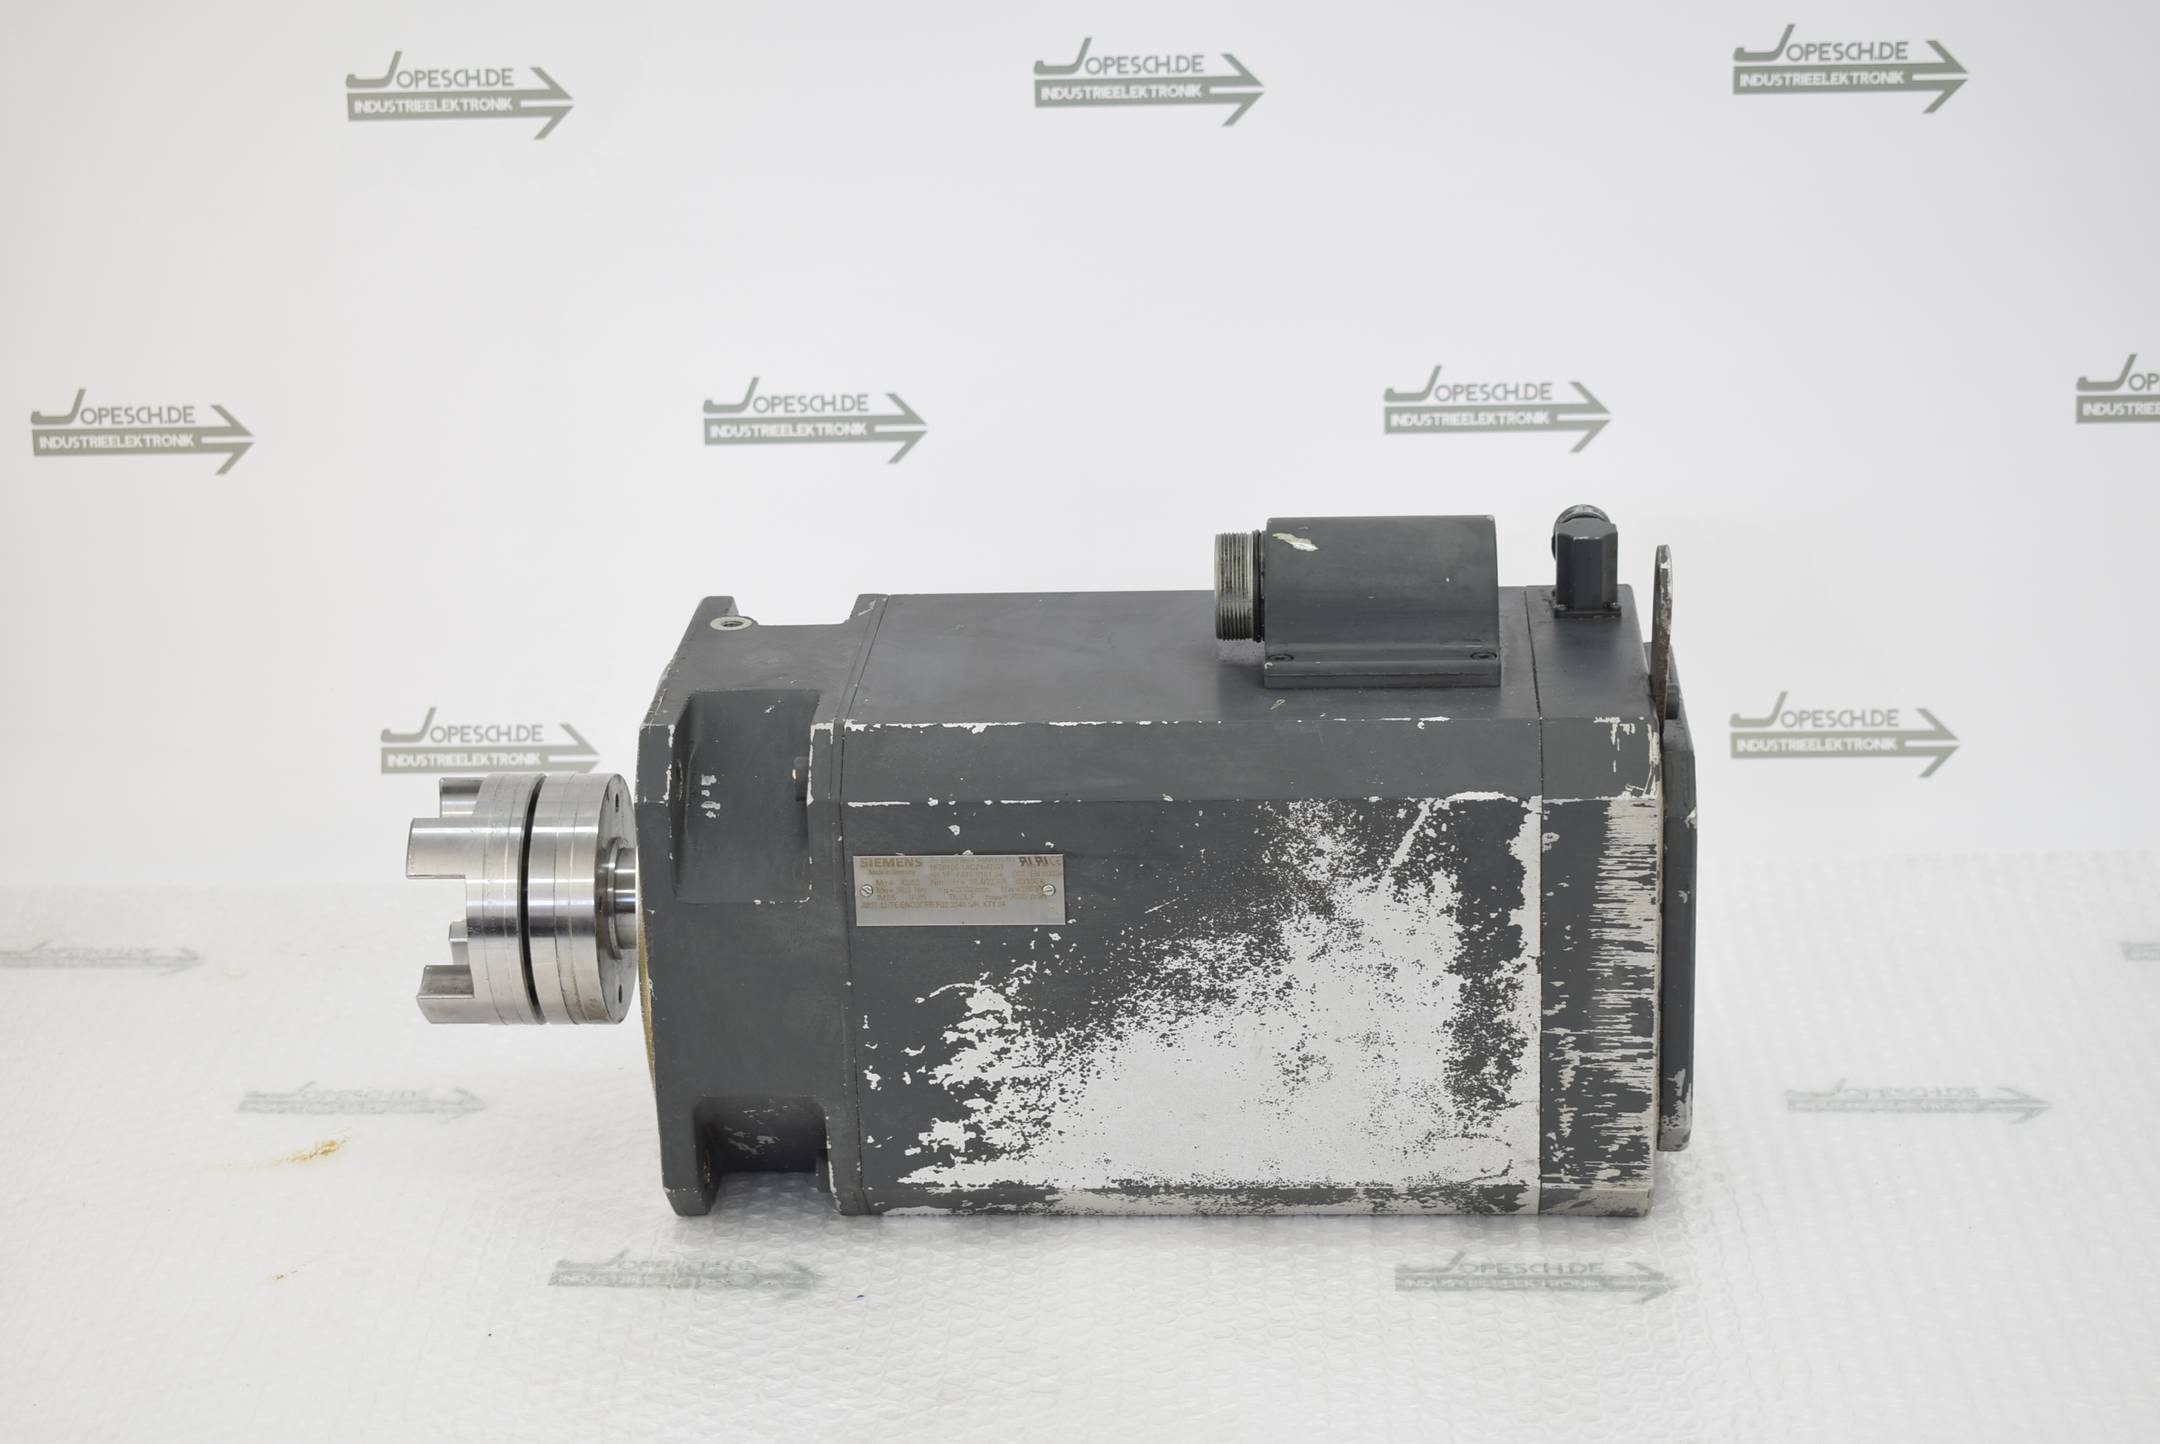 Siemens Brushless Servomotor 1FT6105-1AC71-4EG1 ( 1FT6105-1AC71-4EG1 )